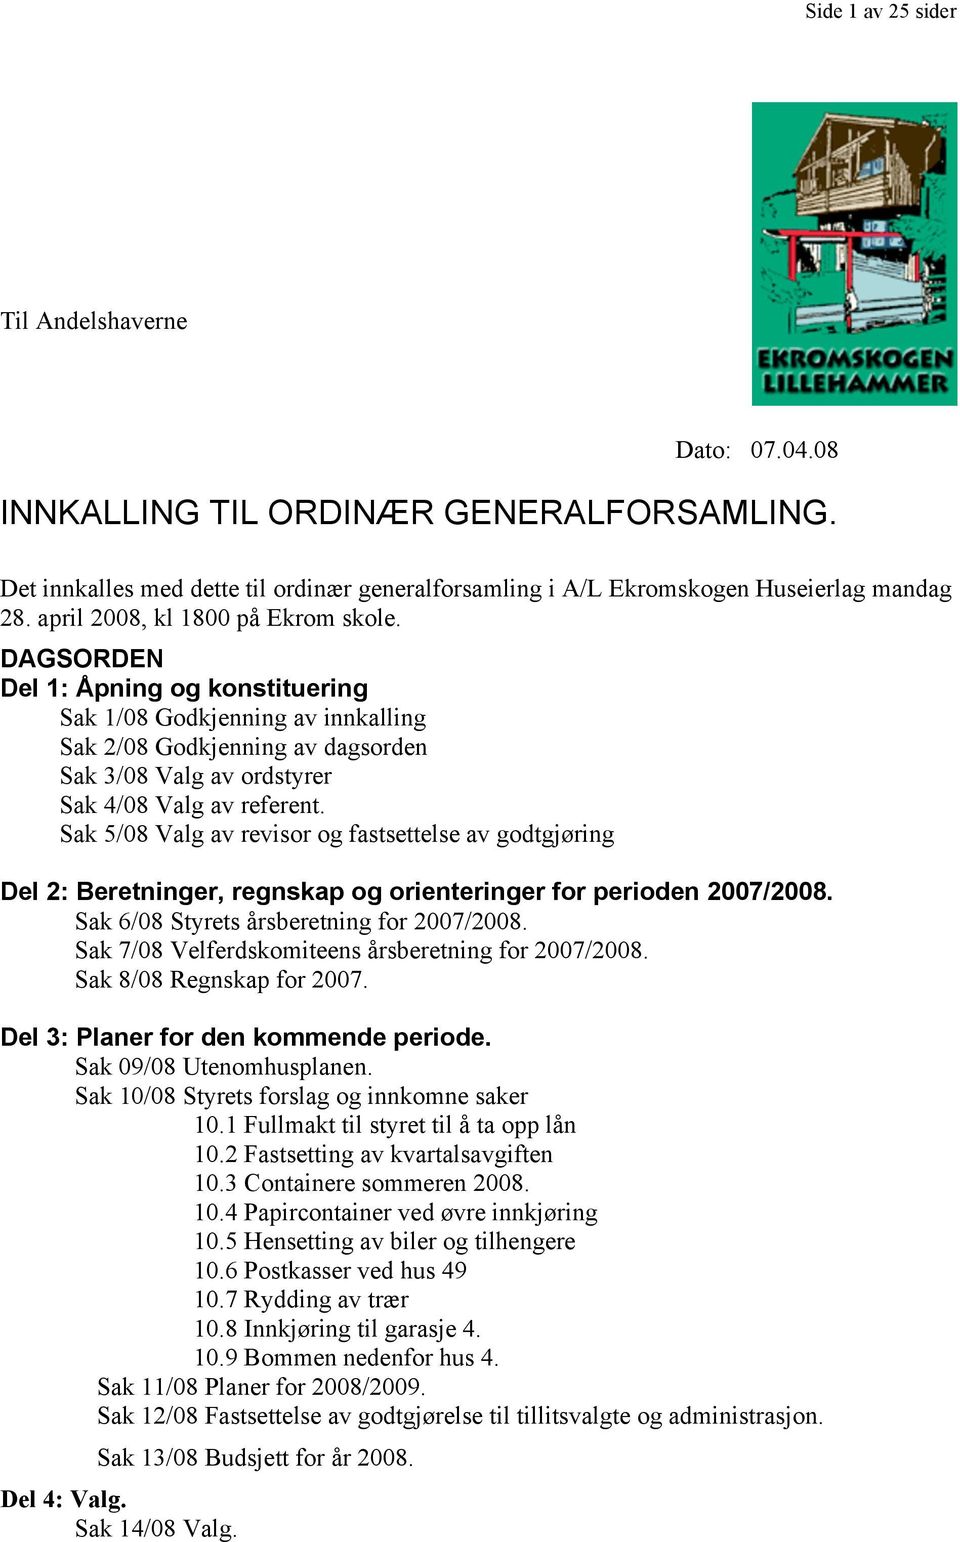 INNKALLING TIL ORDINÆR GENERALFORSAMLING. - PDF Gratis nedlasting